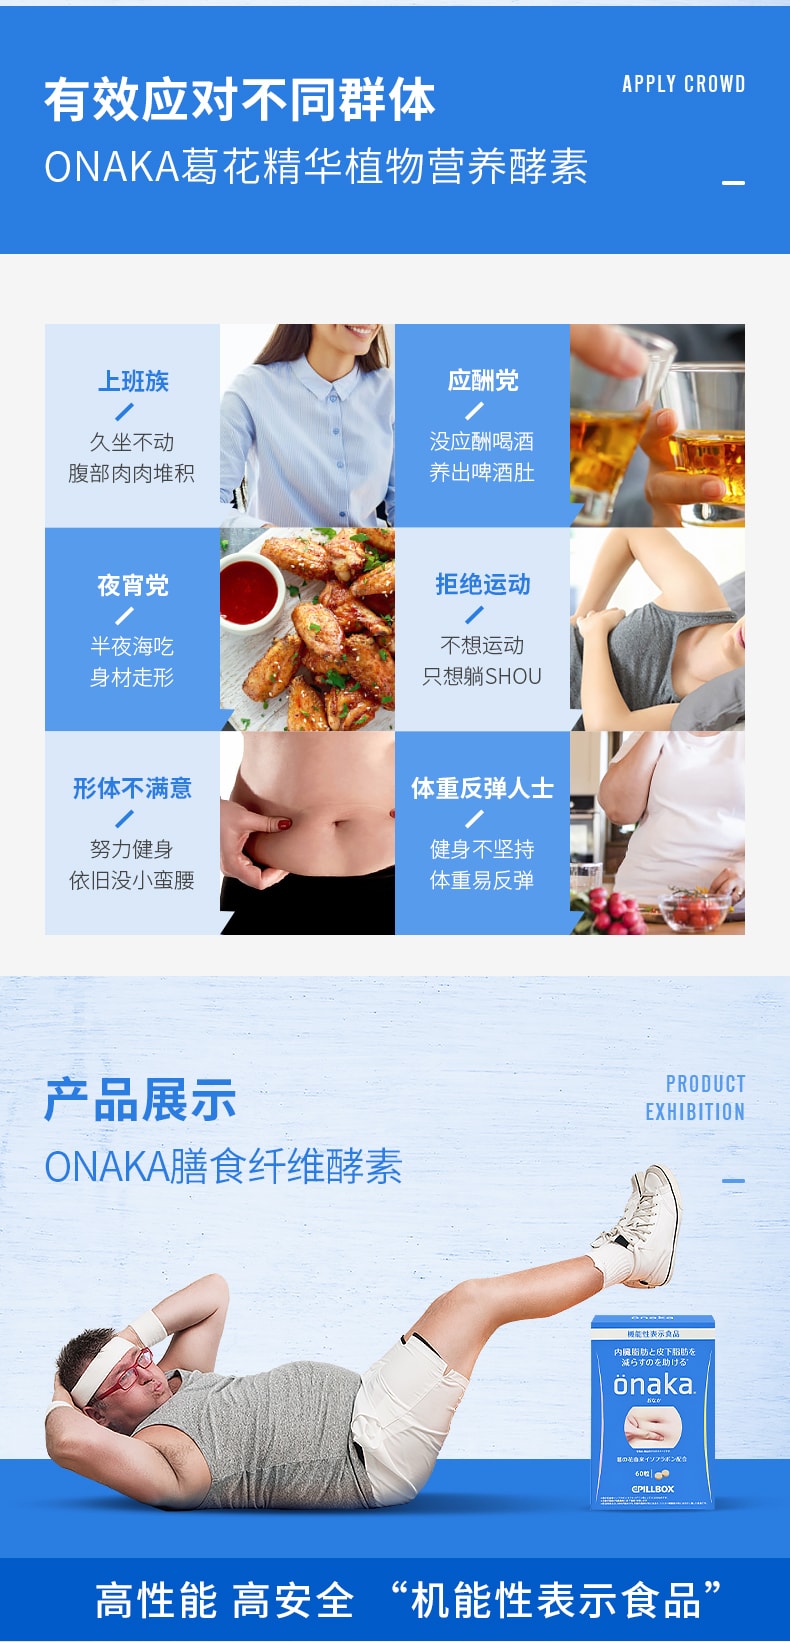 【日本直邮】日本PILLBOX ONAKA减小腹部腰赘肉内脏脂肪膳食营养素 60粒装